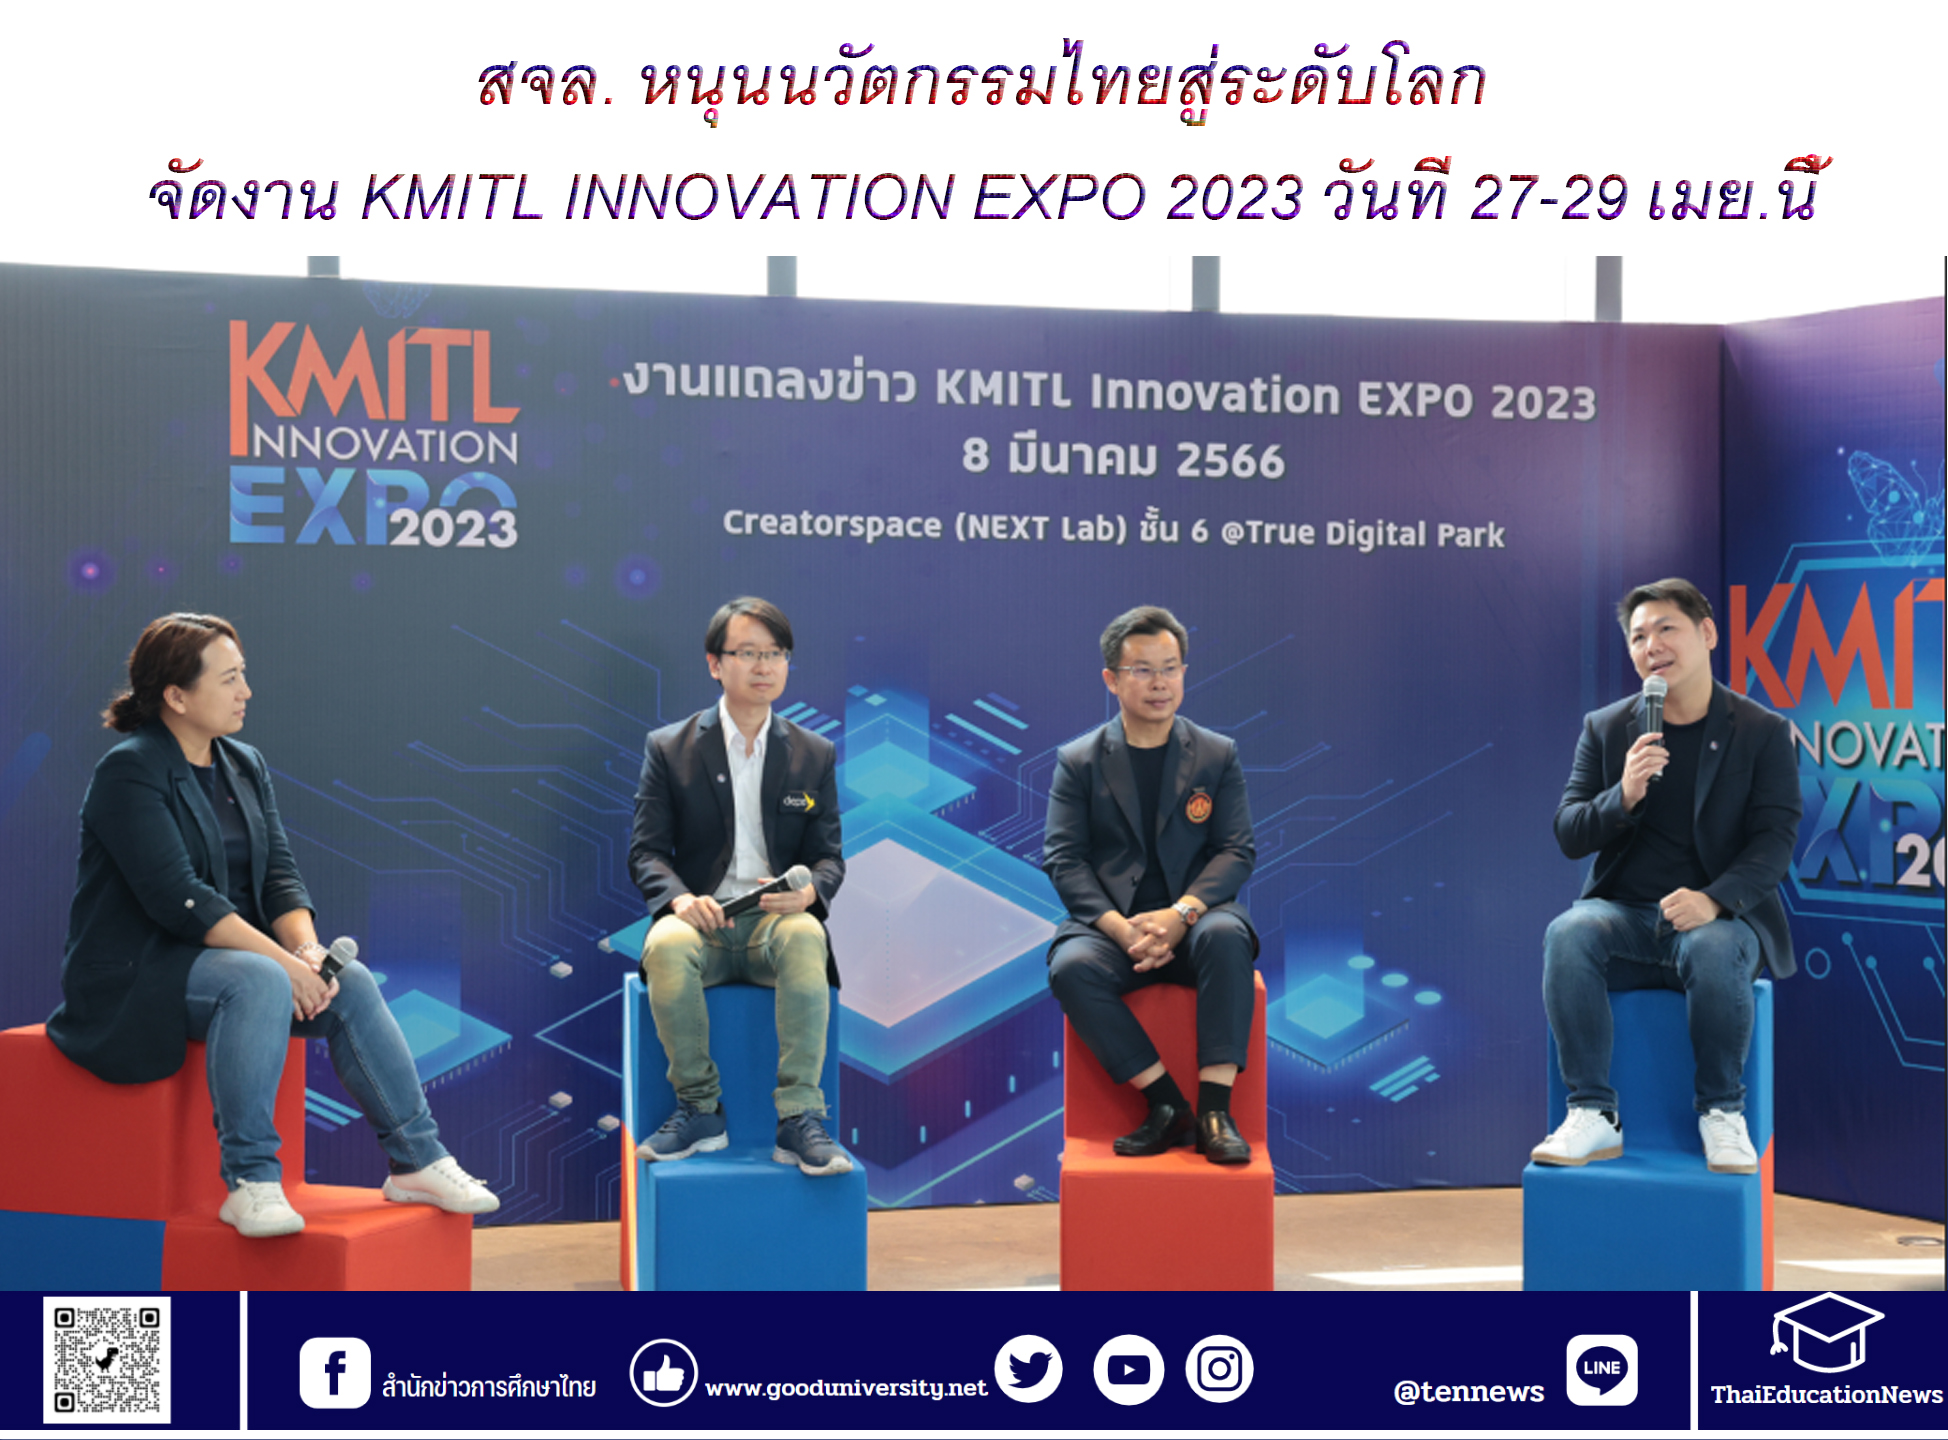 สจล. หนุนนวัตกรรมไทยสู่ระดับโลก เตรียมจัดงาน KMITL INNOVATION EXPO 2023 วันที่ 27-29 เมย.นี้ โชว์พลังสิ่งประดิษฐ์ฝีมือคนไทย 1,111 ชิ้น เผยโฉม ‘แบตเตอรี่กราฟีน’ ครั้งแรกในประเทศไทย